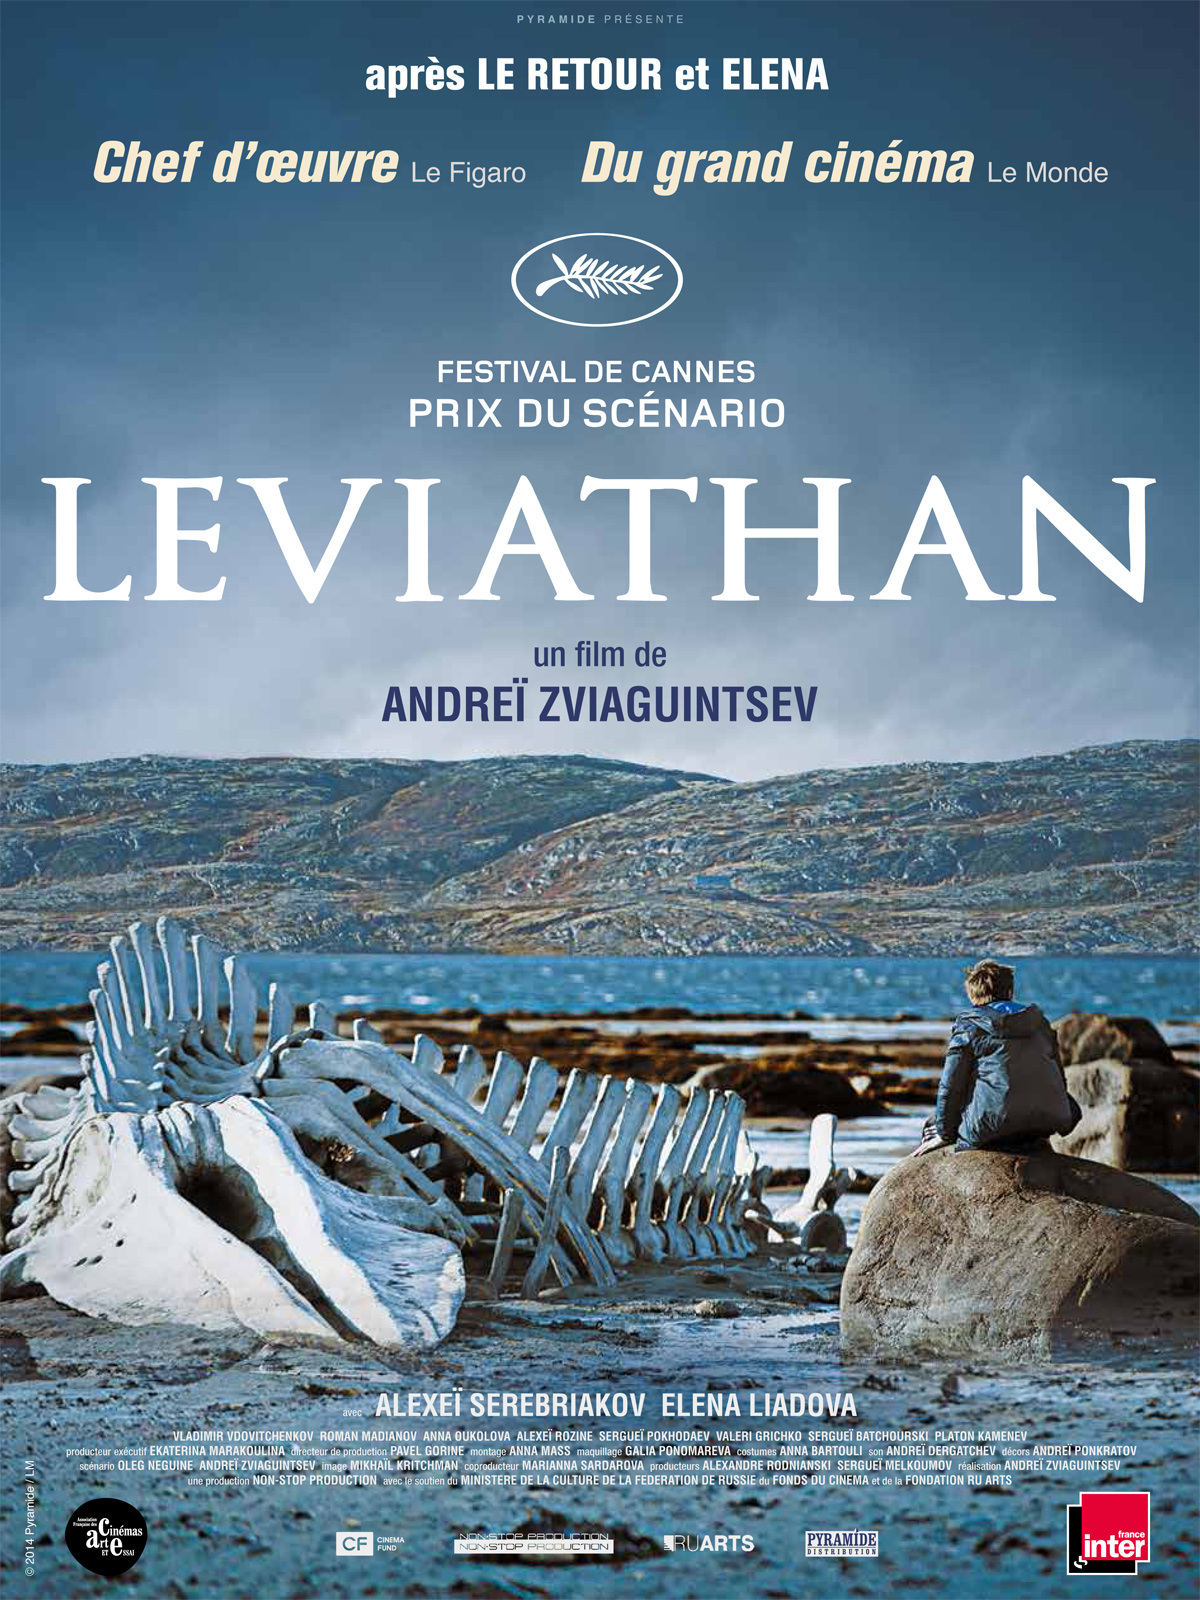 leviathan - Leviathan: la vodka de la défense. leviathan affiches cannes